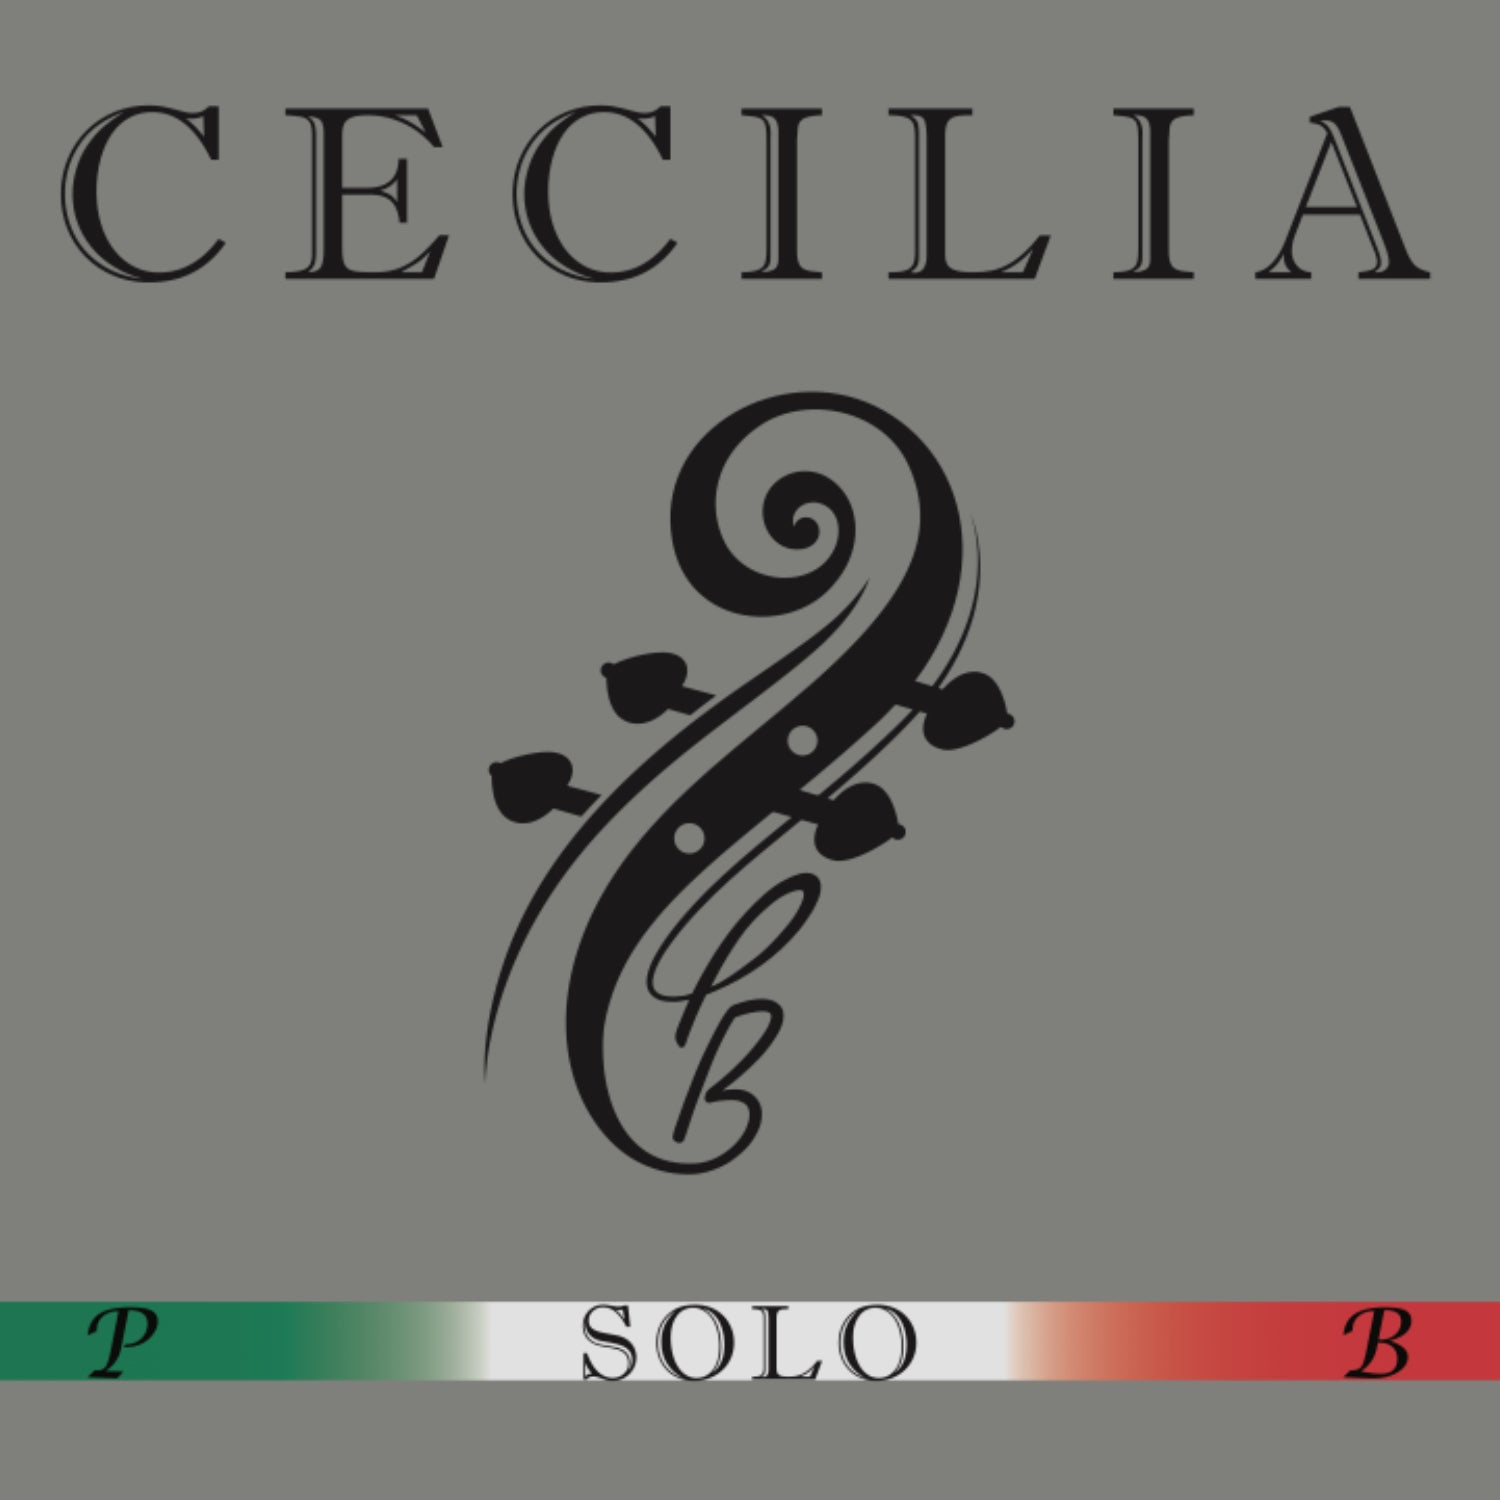 CECILIA SOLO Cello MINI